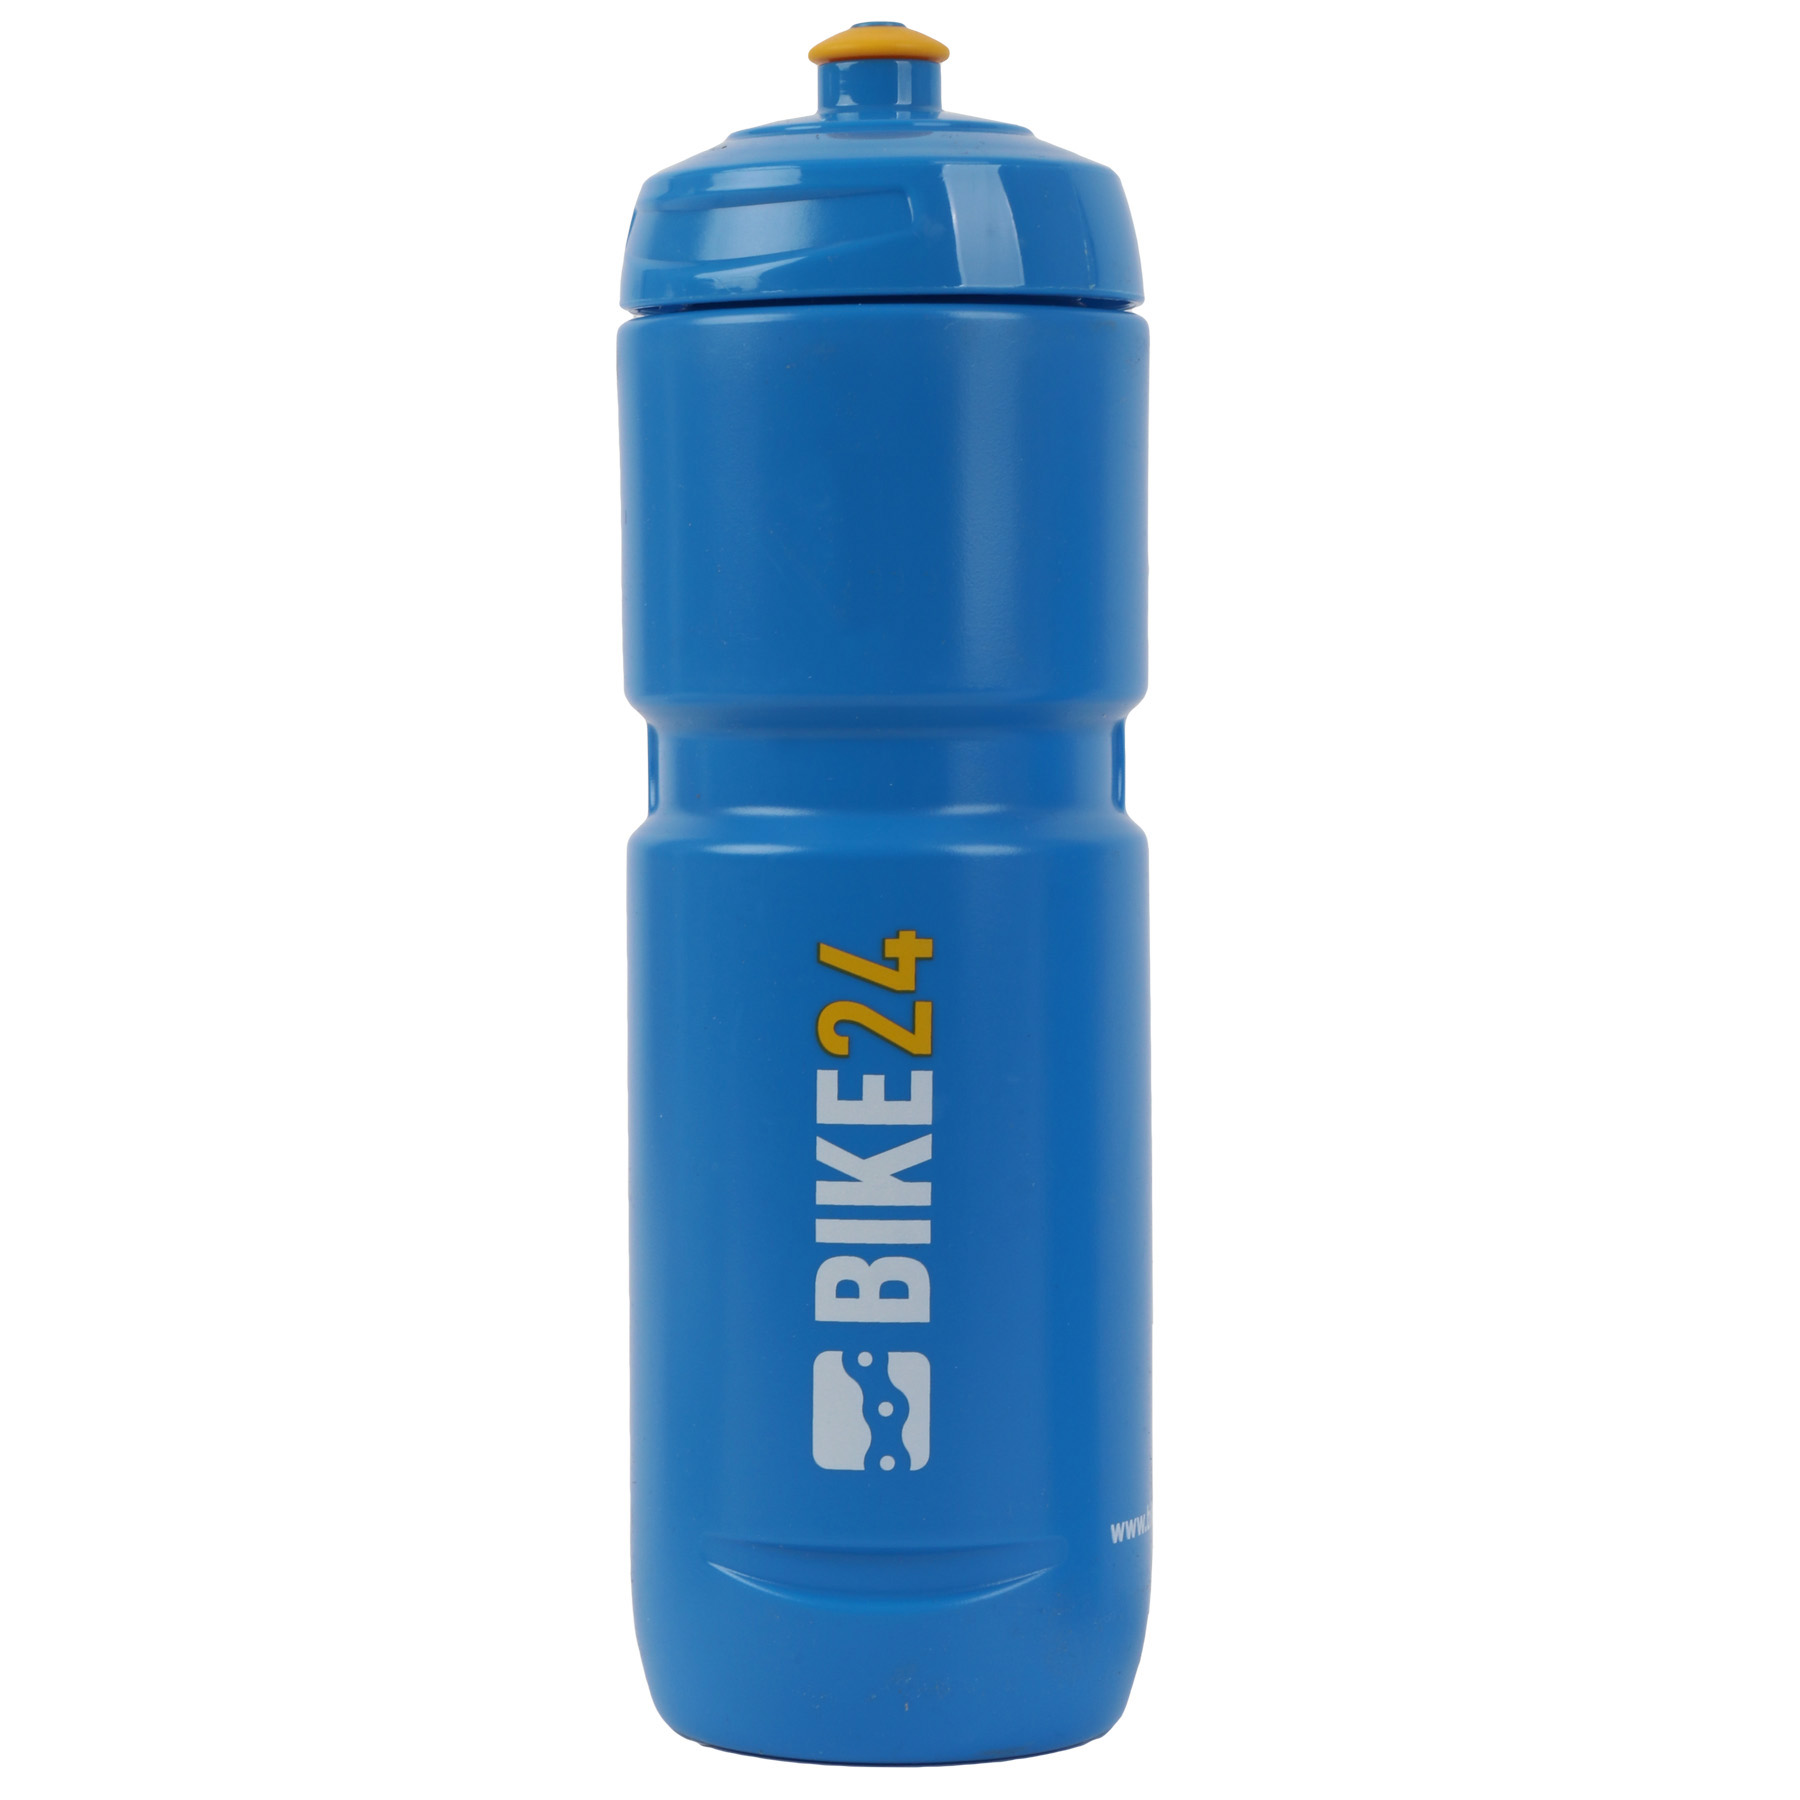 Produktbild von Elite BIKE24 Super Loli Fahrradflasche 800ml - blau